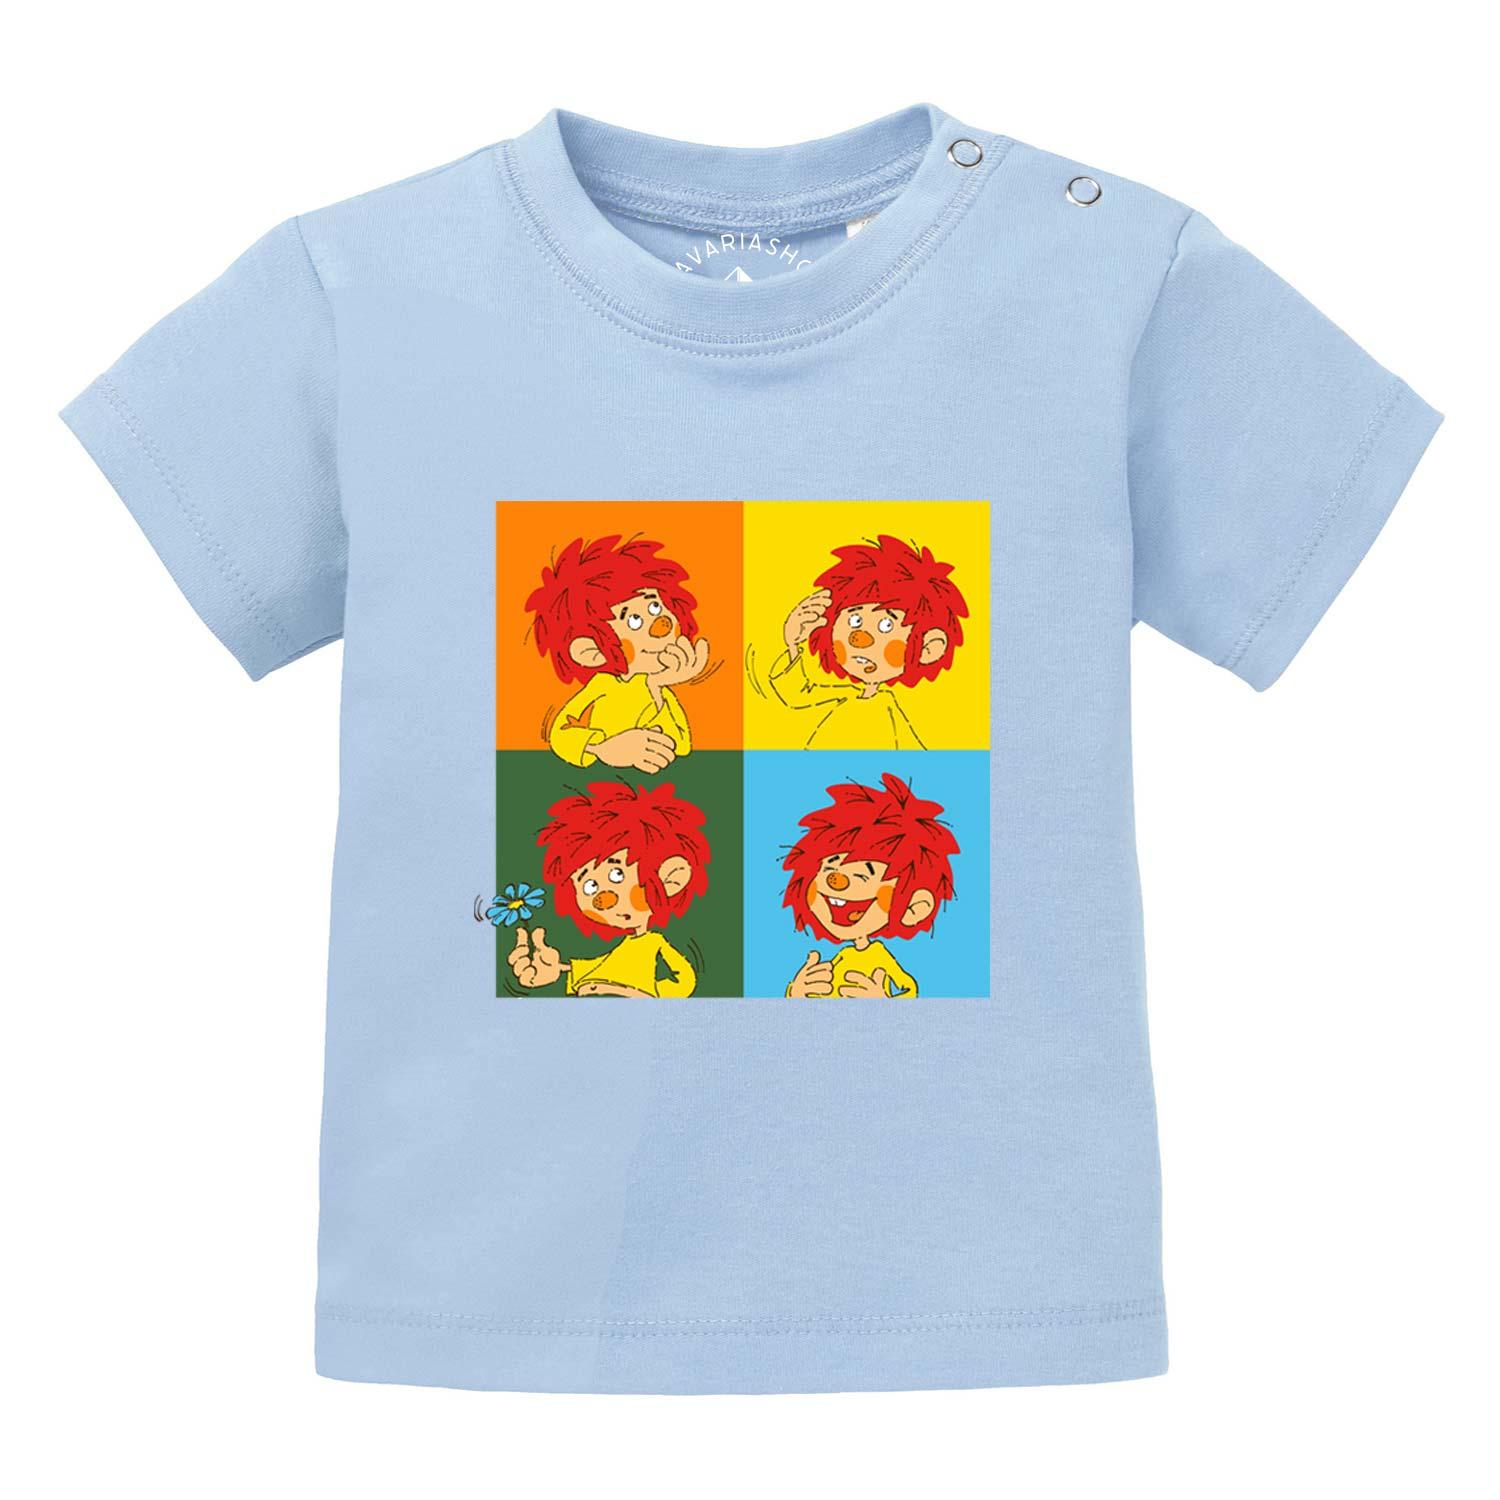 ®Pumuckl Baby T-Shirt "Meisterwerk" - bavariashop - mei LebensGfui